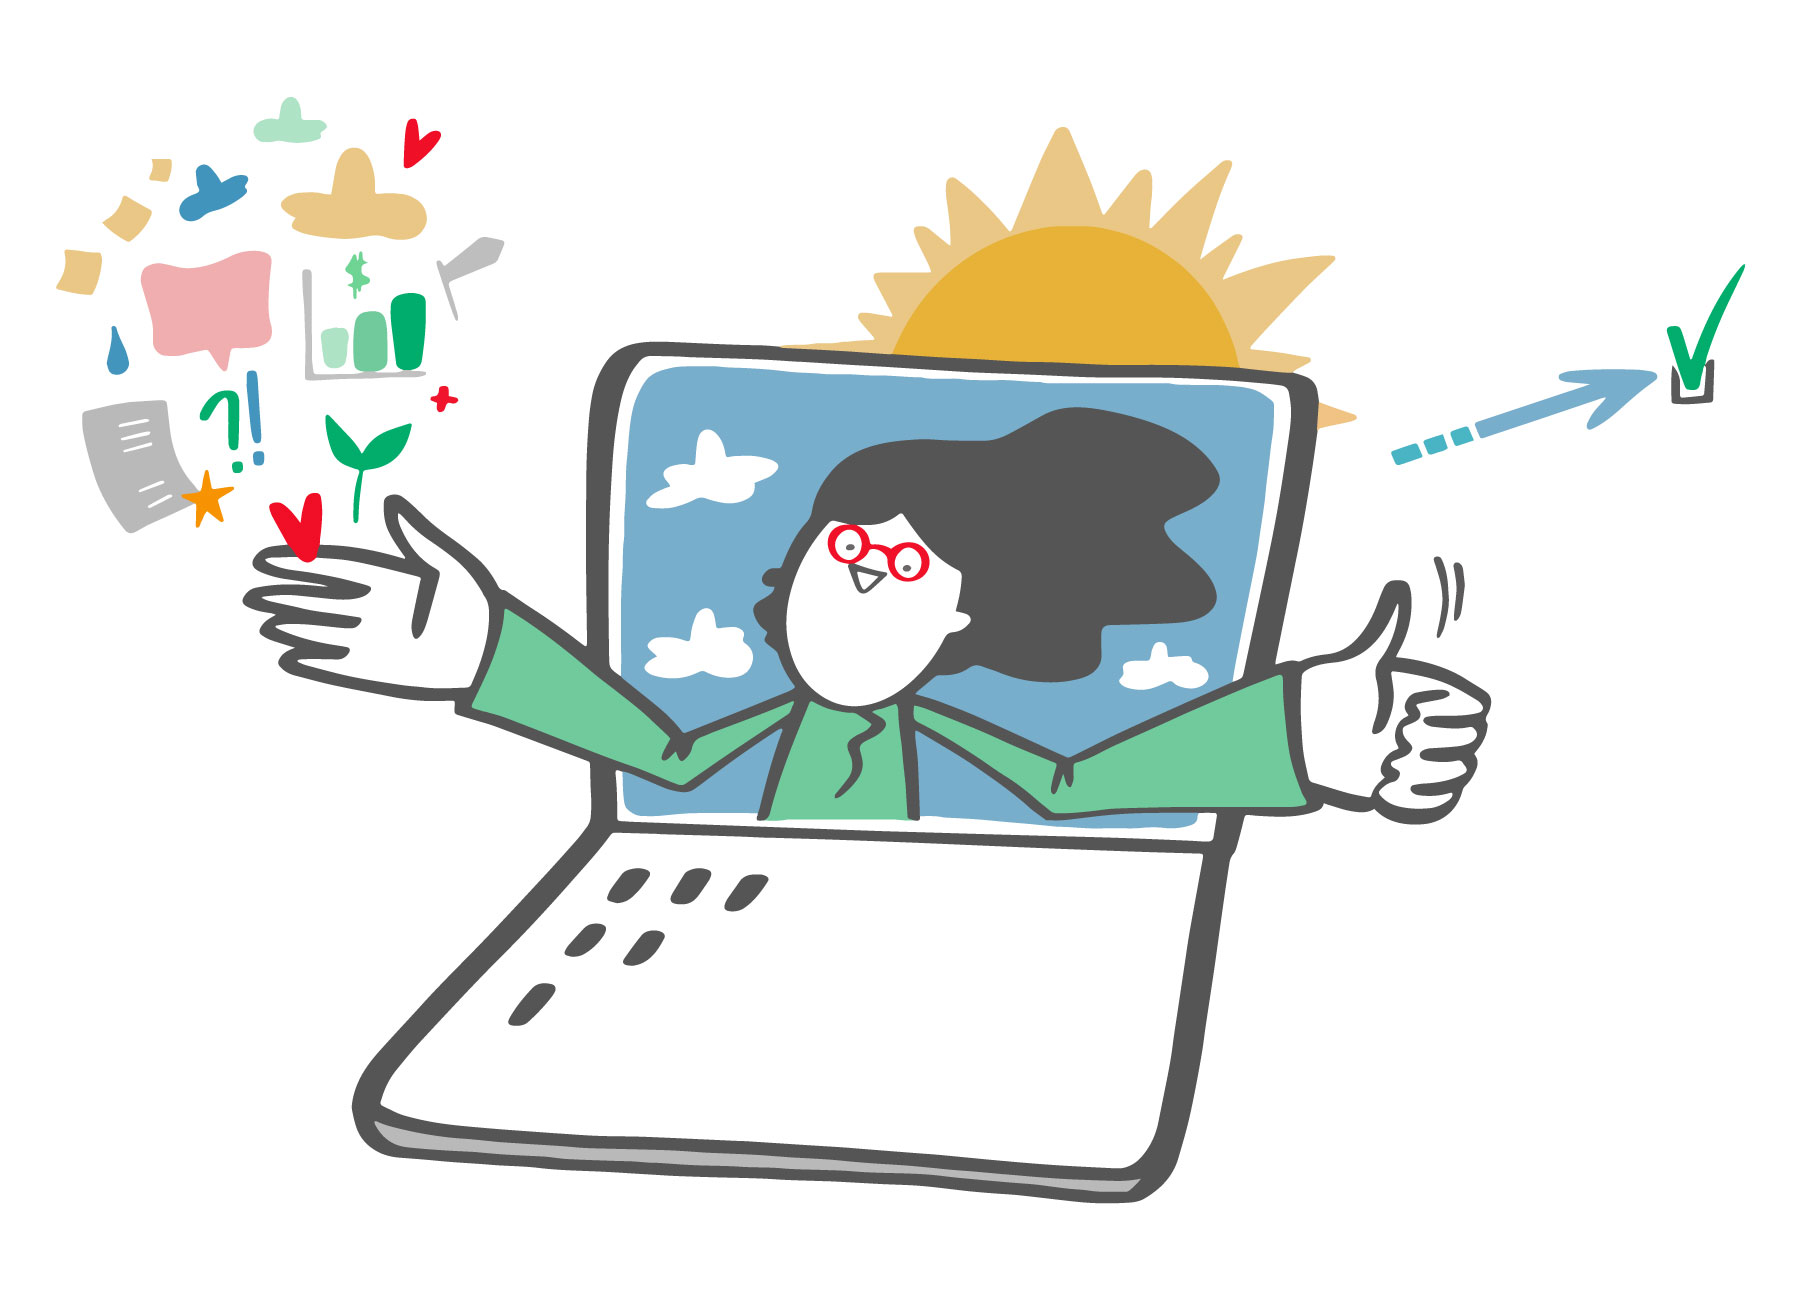 en laptop där en person syns i halvfigur och armarna sticker ut från skärmen. Många små symboler syns runt händerna i många olika färger.